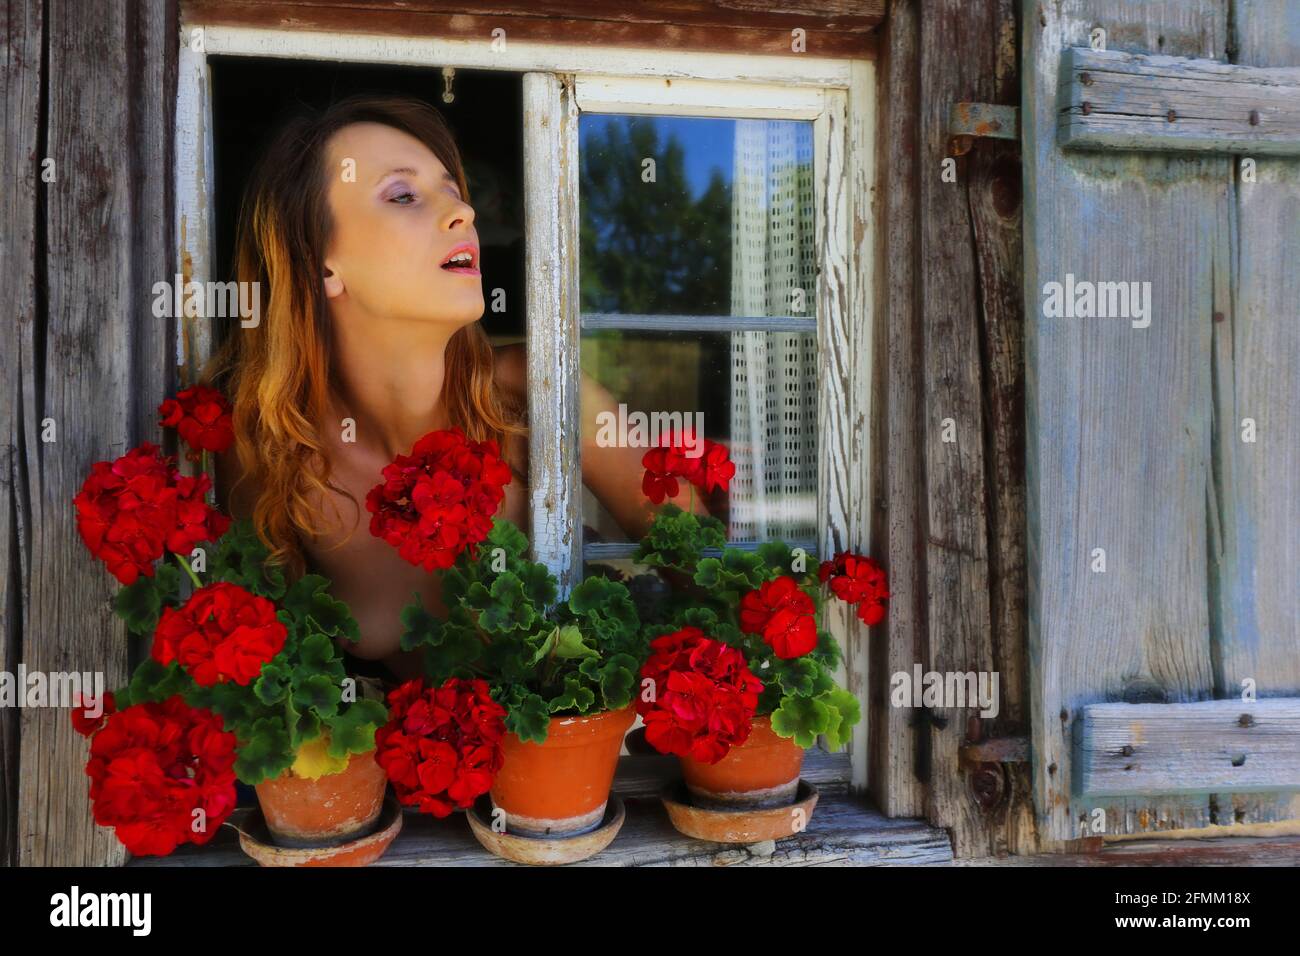 Nürnberg, Franken, Bayern, bezaubernd schöne junge Frau blickt aus alten Holzfenster mit Blumen am Fensterbrett Stock Photo